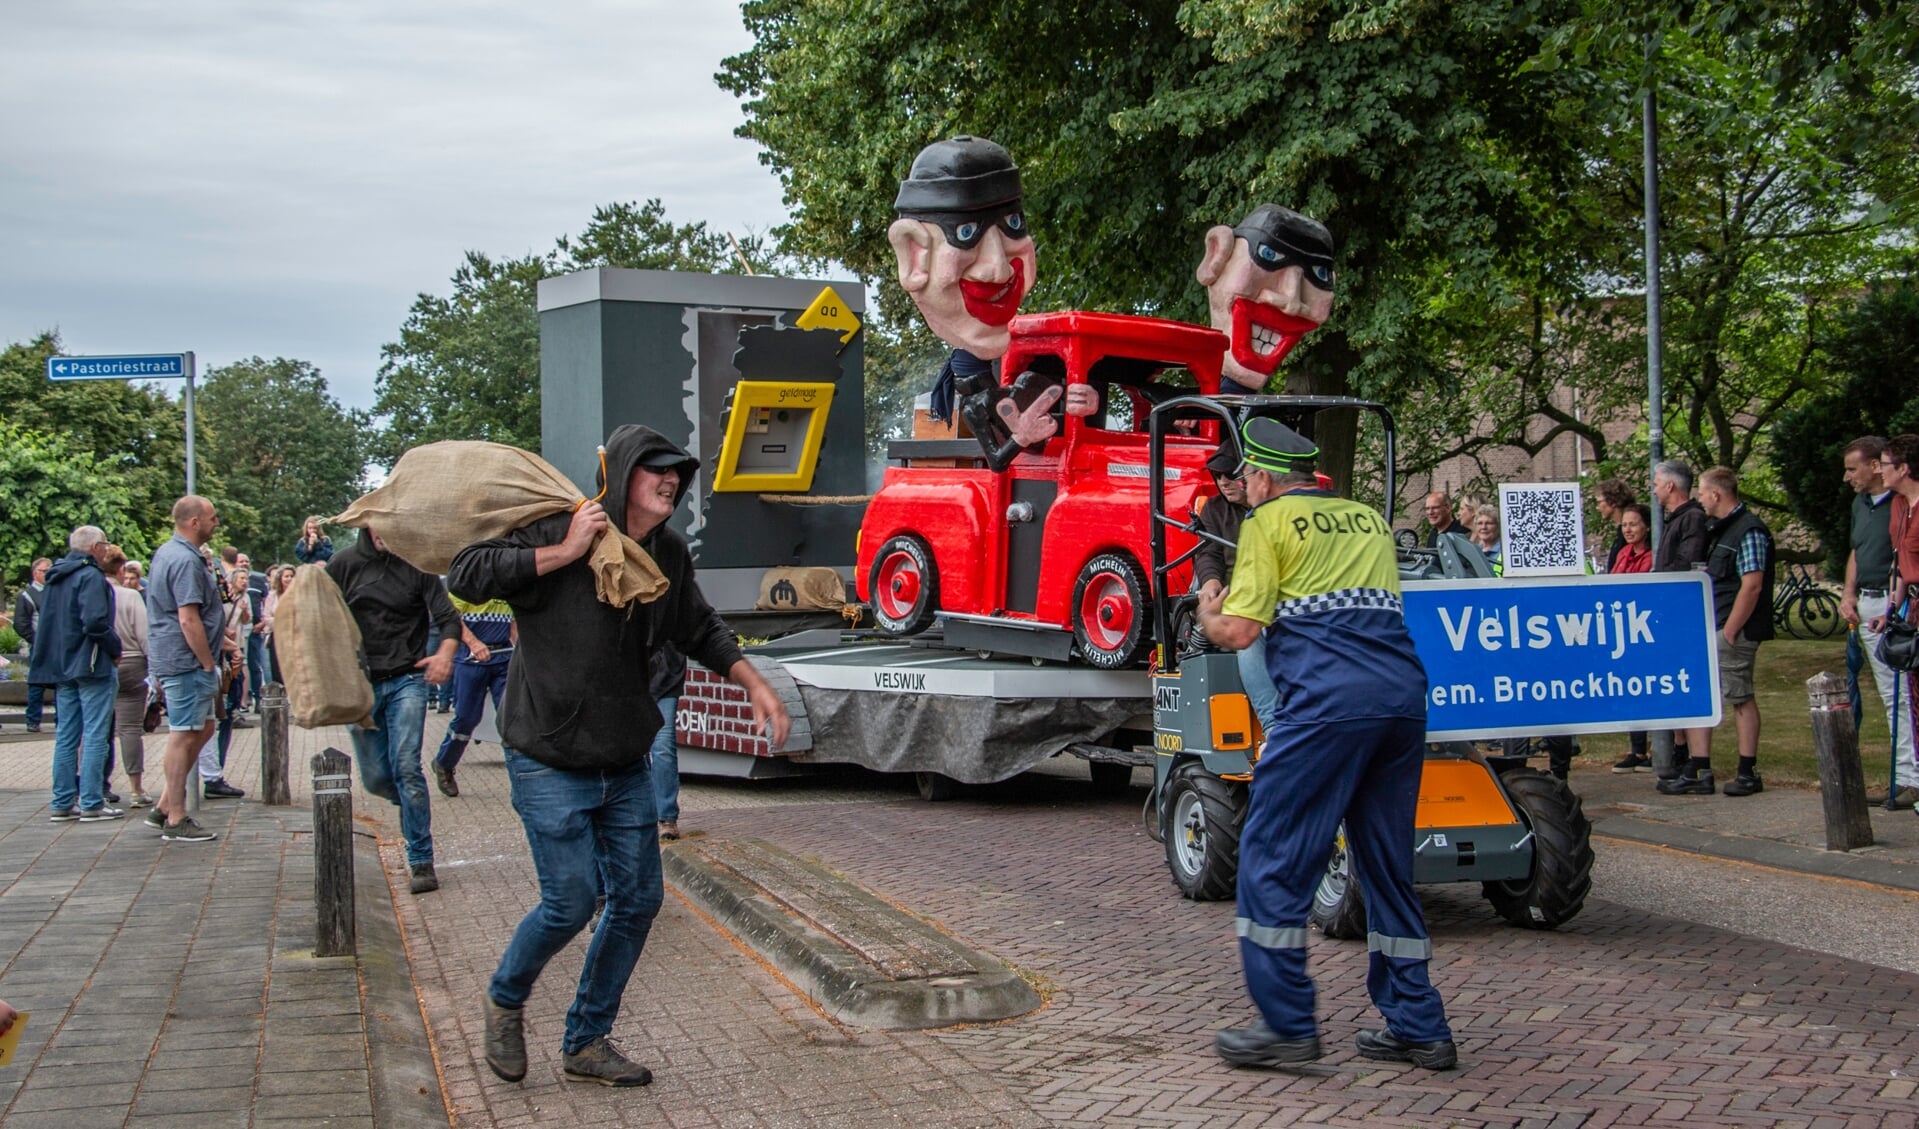 De winnende wagen van de optocht in Keijenborg van De Boomkampjes: ‘Plofkraak is Noodzaak’. Foto: Liesbeth Spaansen